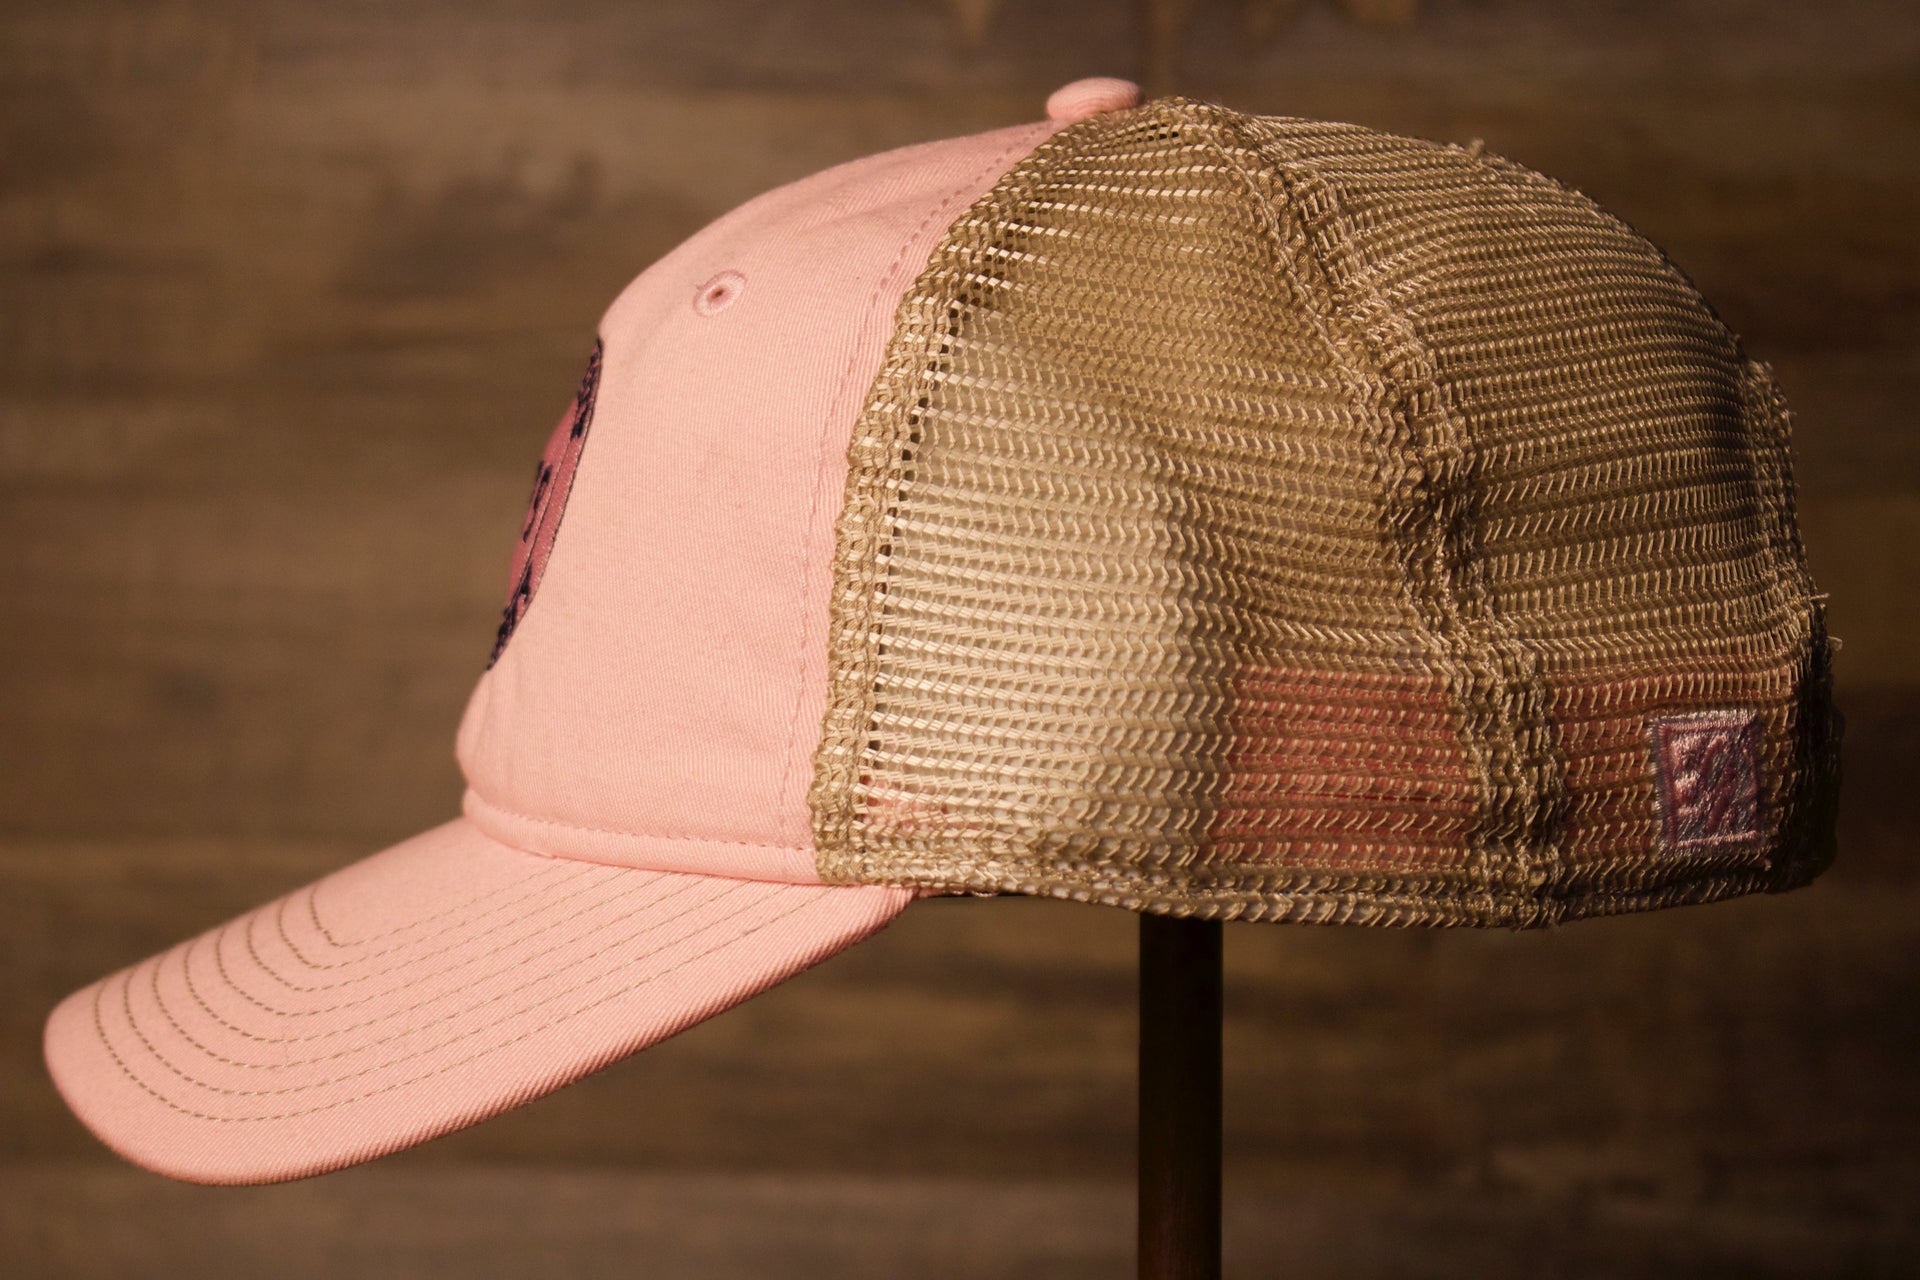 Ocean city Trucker hat Pink khaki | ocnj trucker hat pink womens hat the wearers left side has the trucker backing 